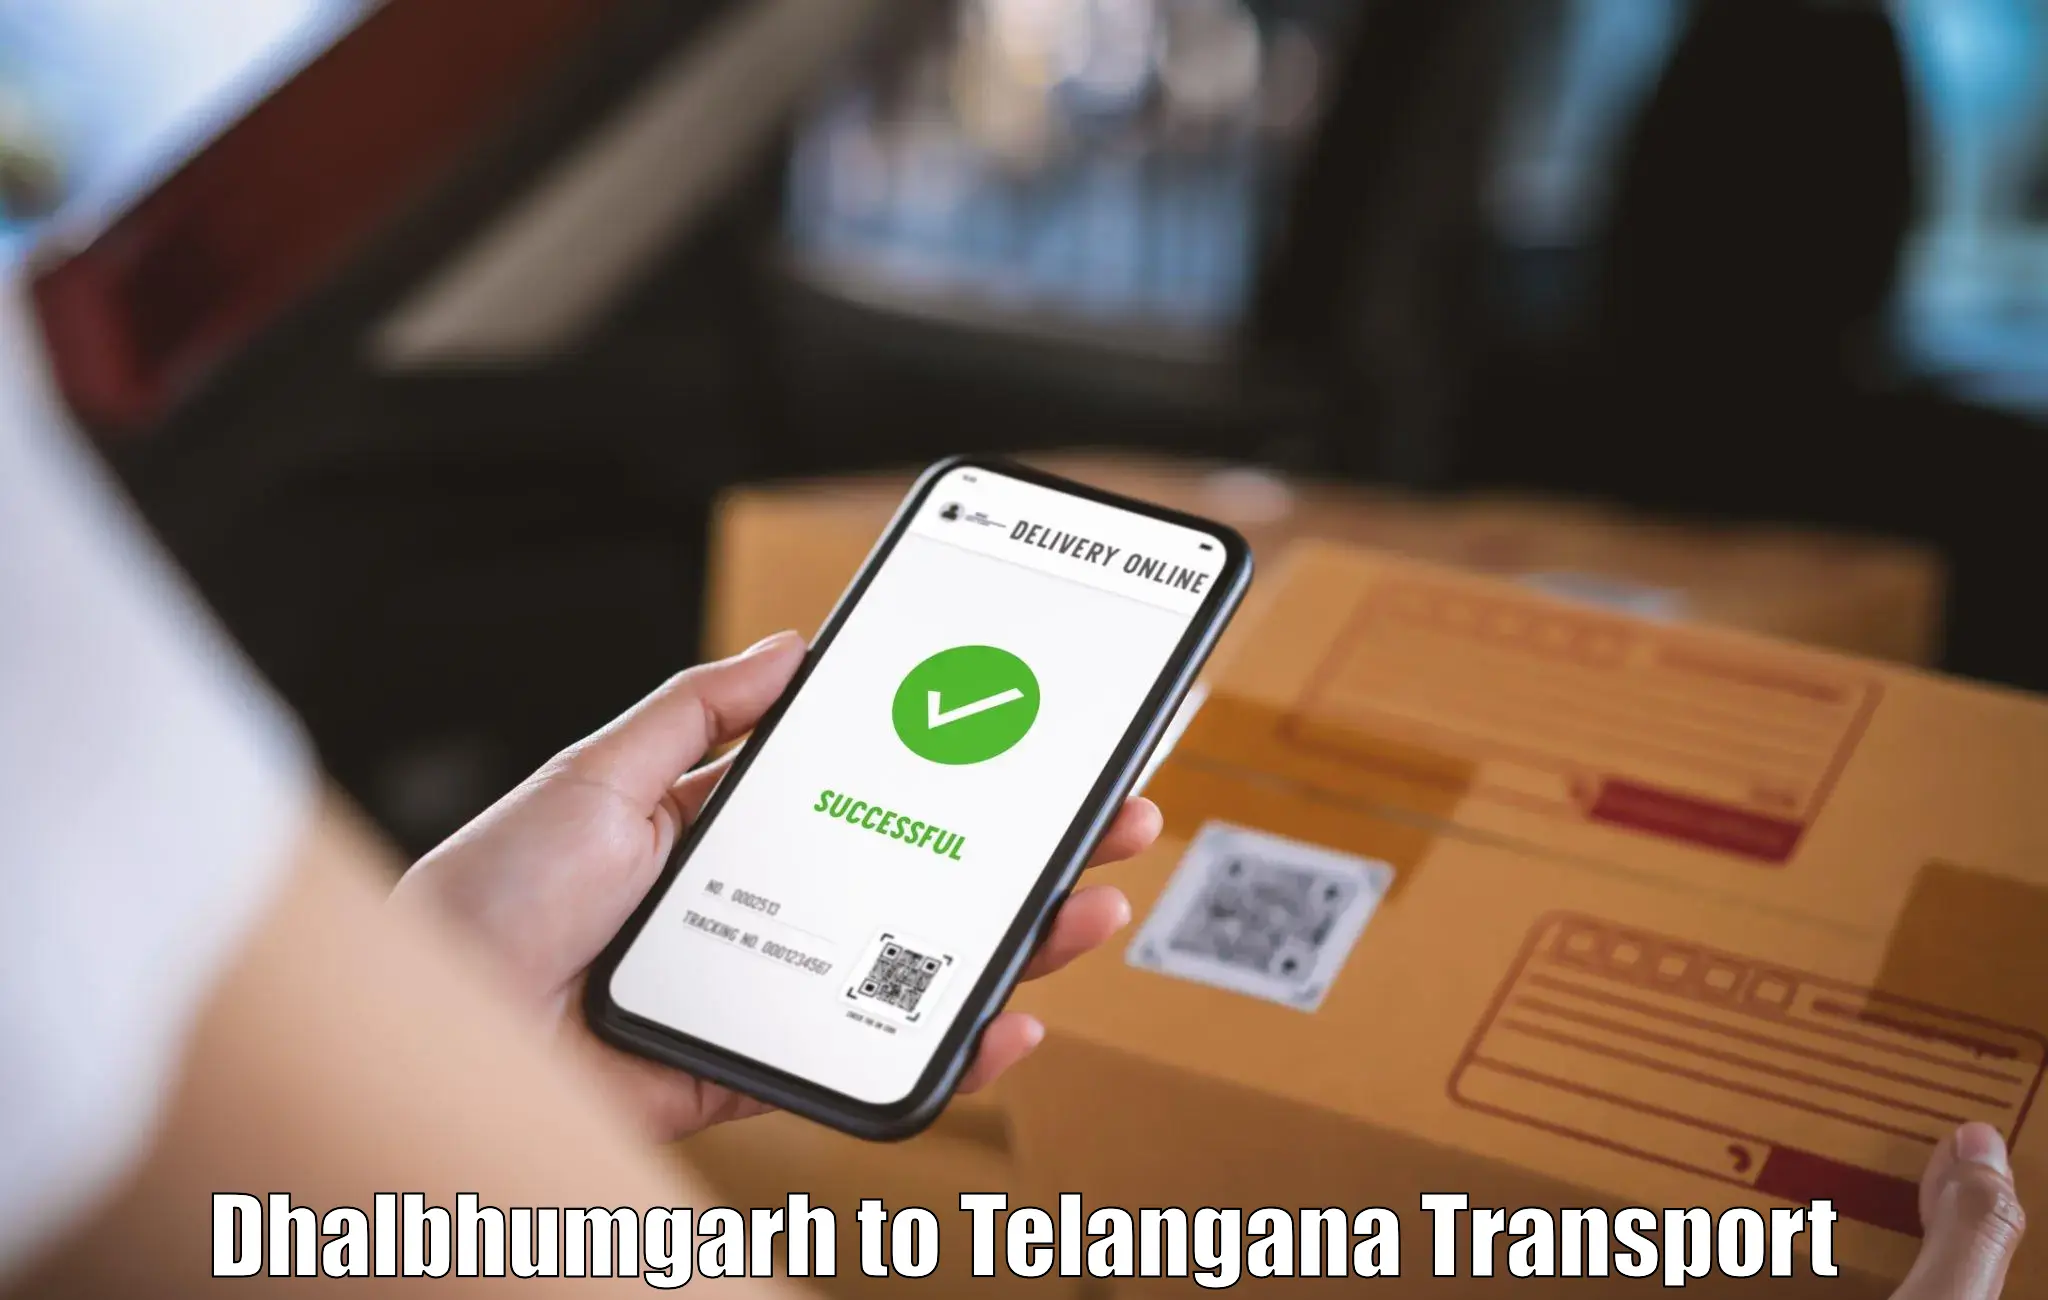 Daily transport service Dhalbhumgarh to Telangana